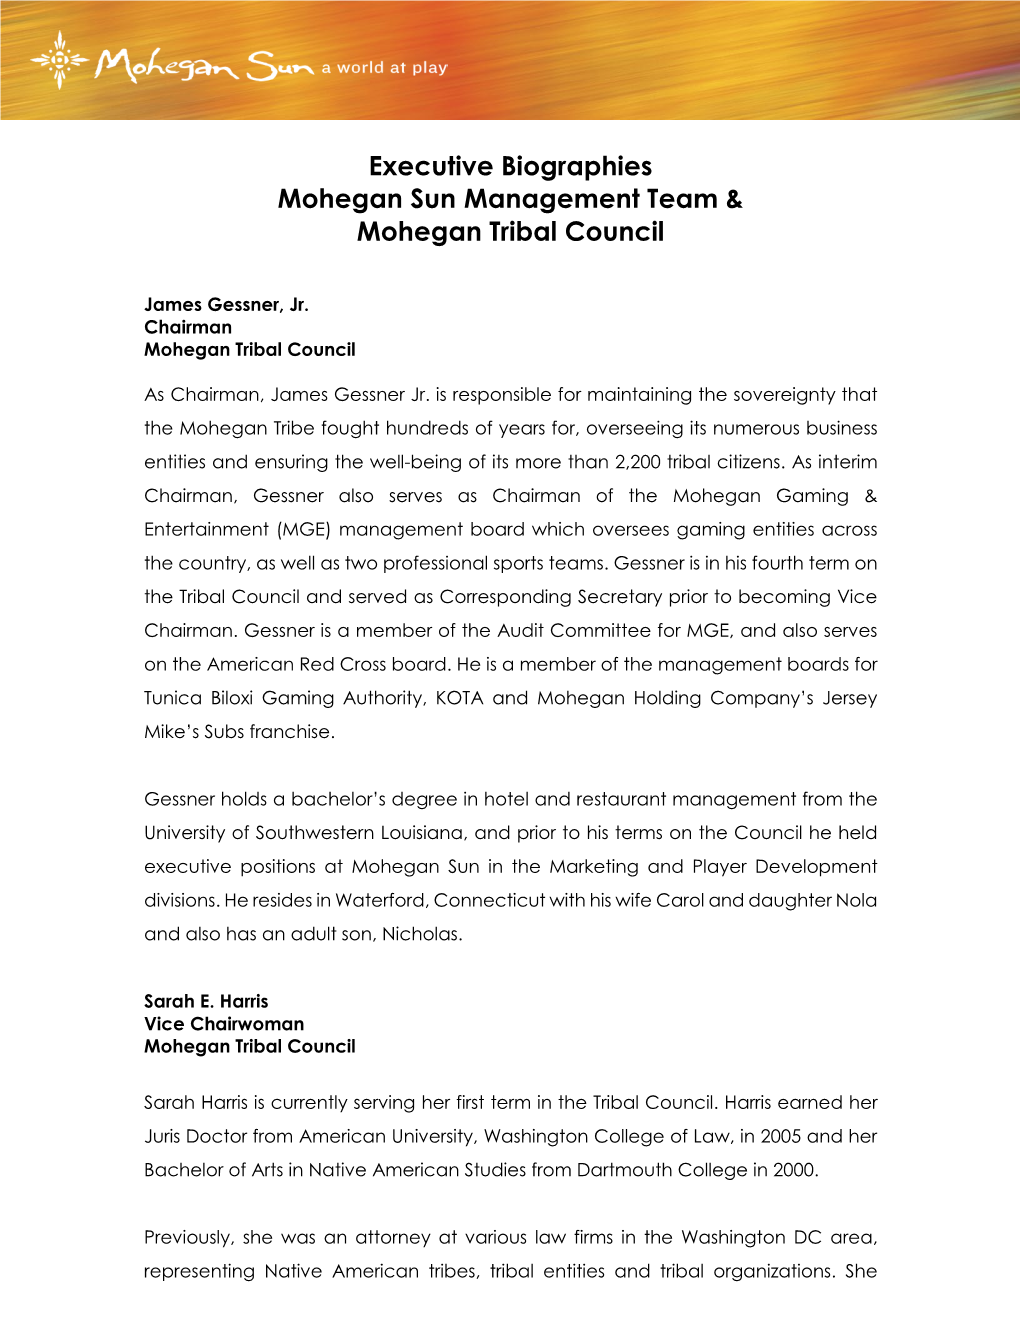 Executive Biographies Mohegan Sun Management Team & Mohegan Tribal Council